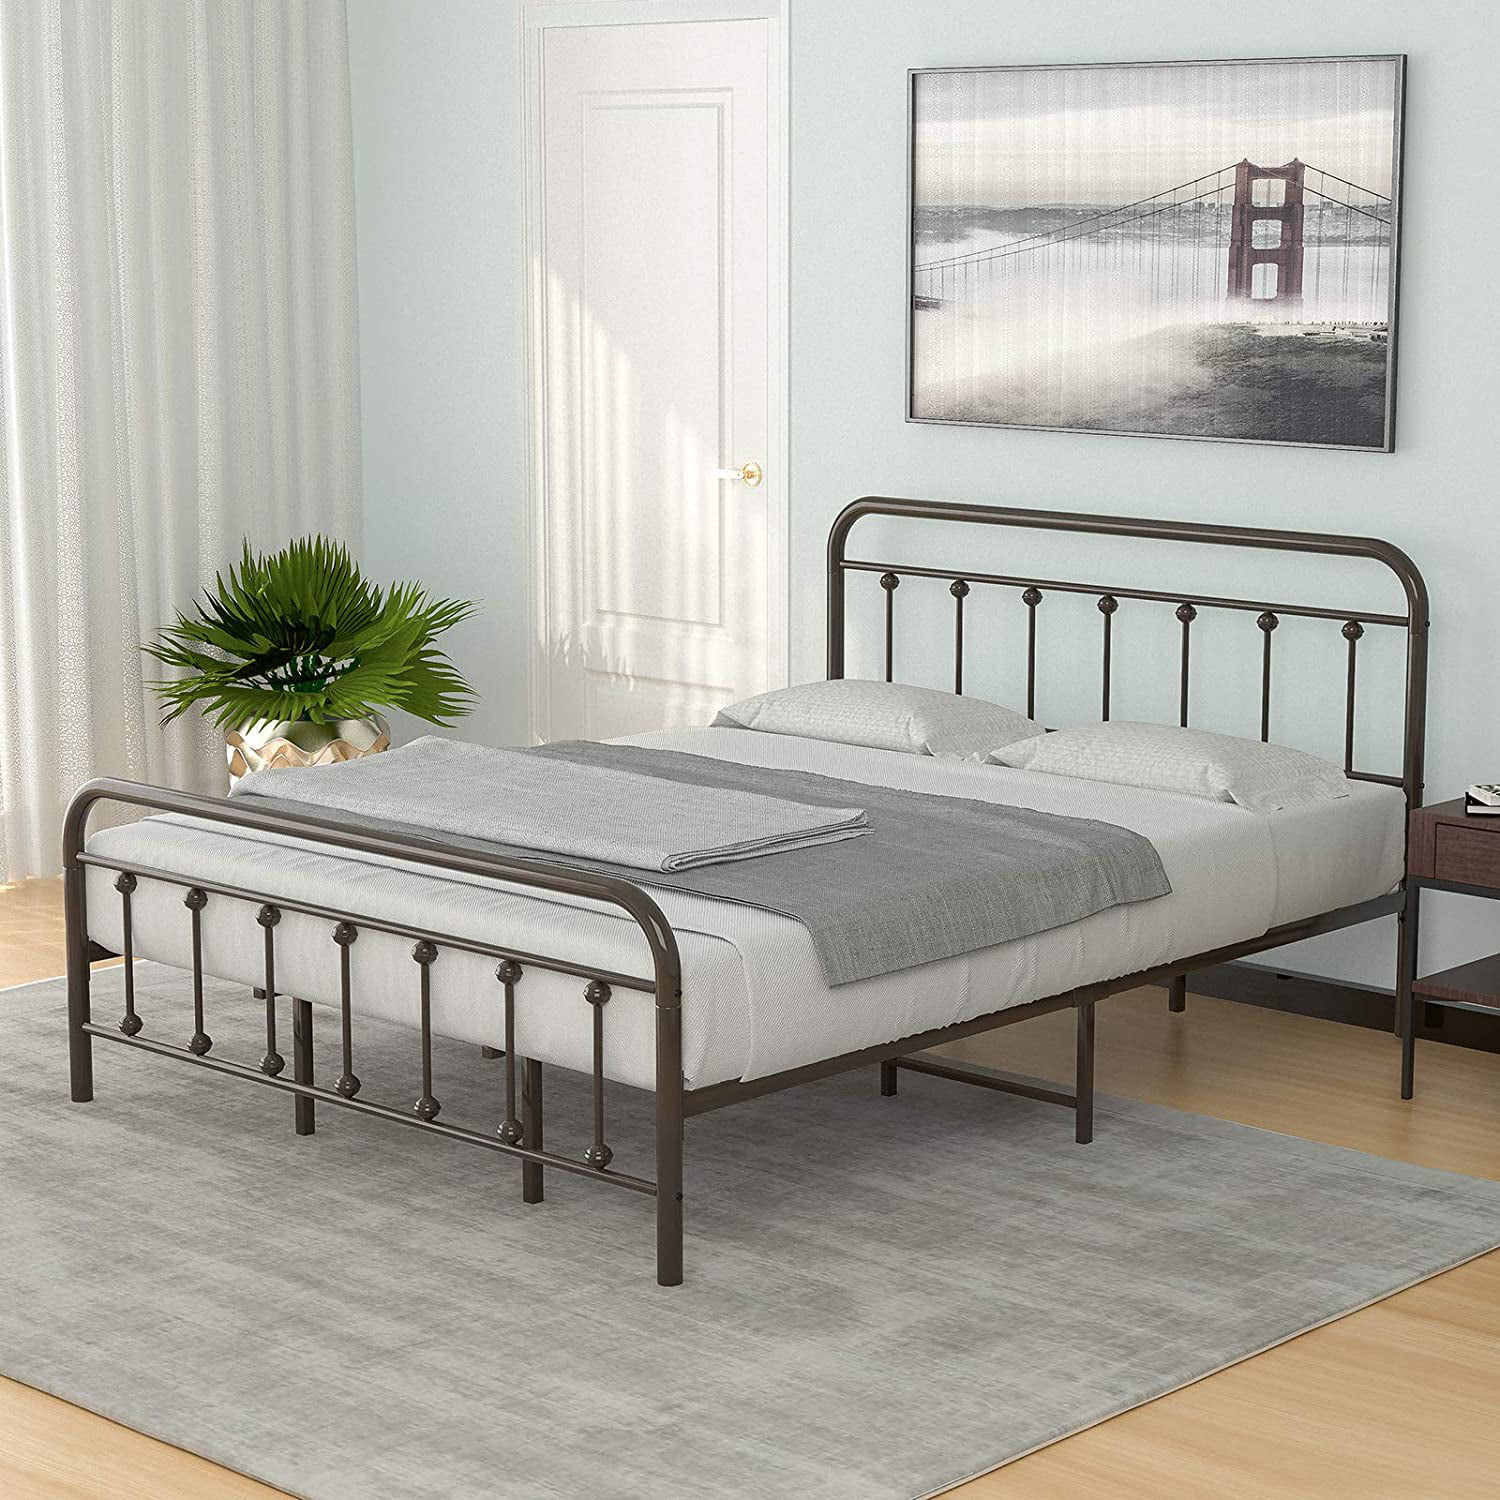 Mecor King Size Metal Platform Bed, Metal Platform Bed Frame With Headboard